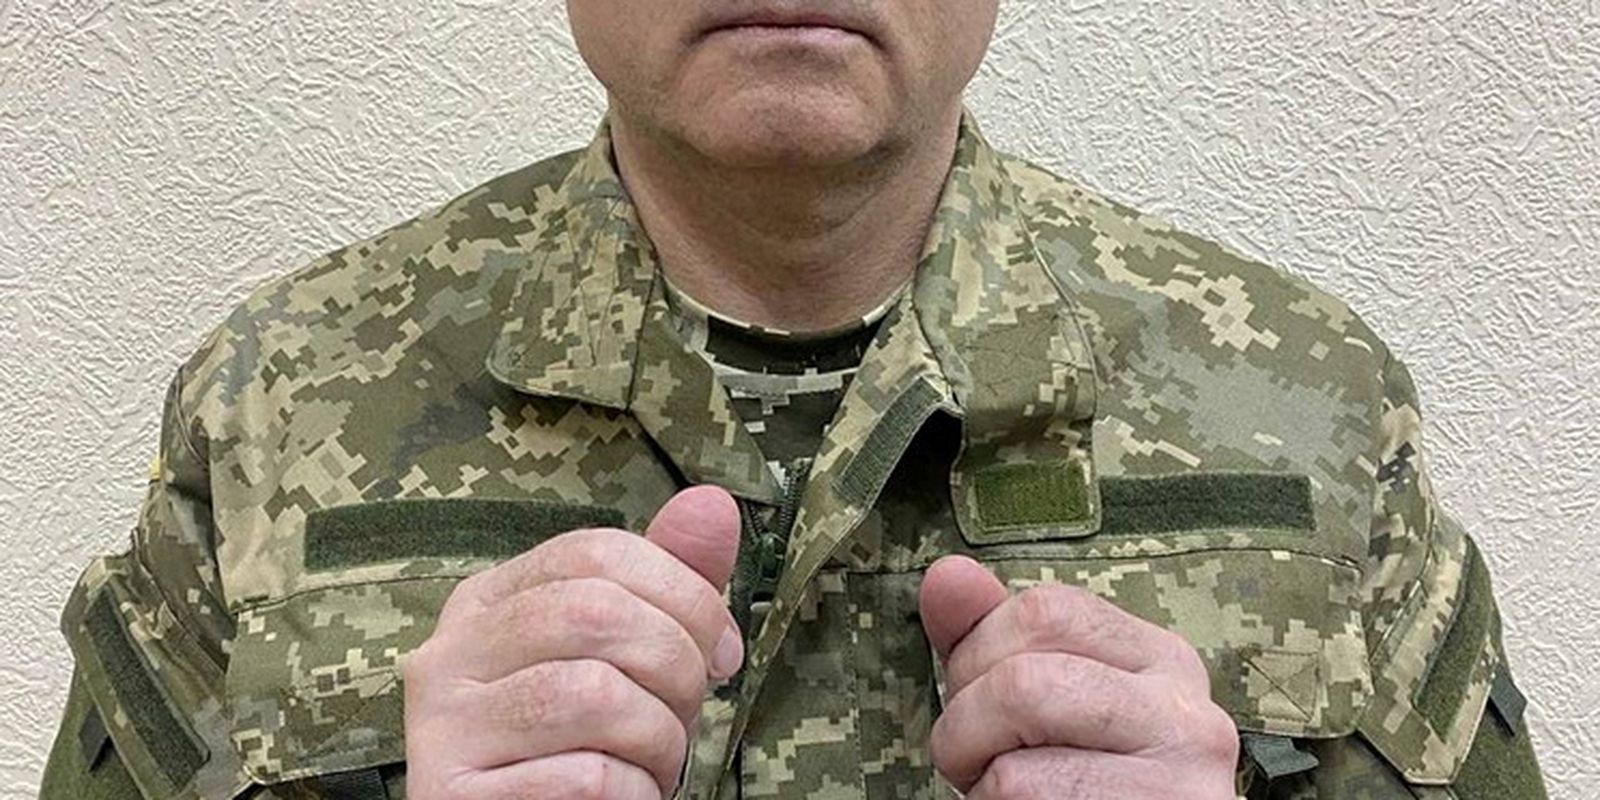 Político ucraniano pró-Rússia Viktor Medvedchuk é visto algemado ao ser detido pelas forças de segurança da Ucrânia em local desconhecido no país